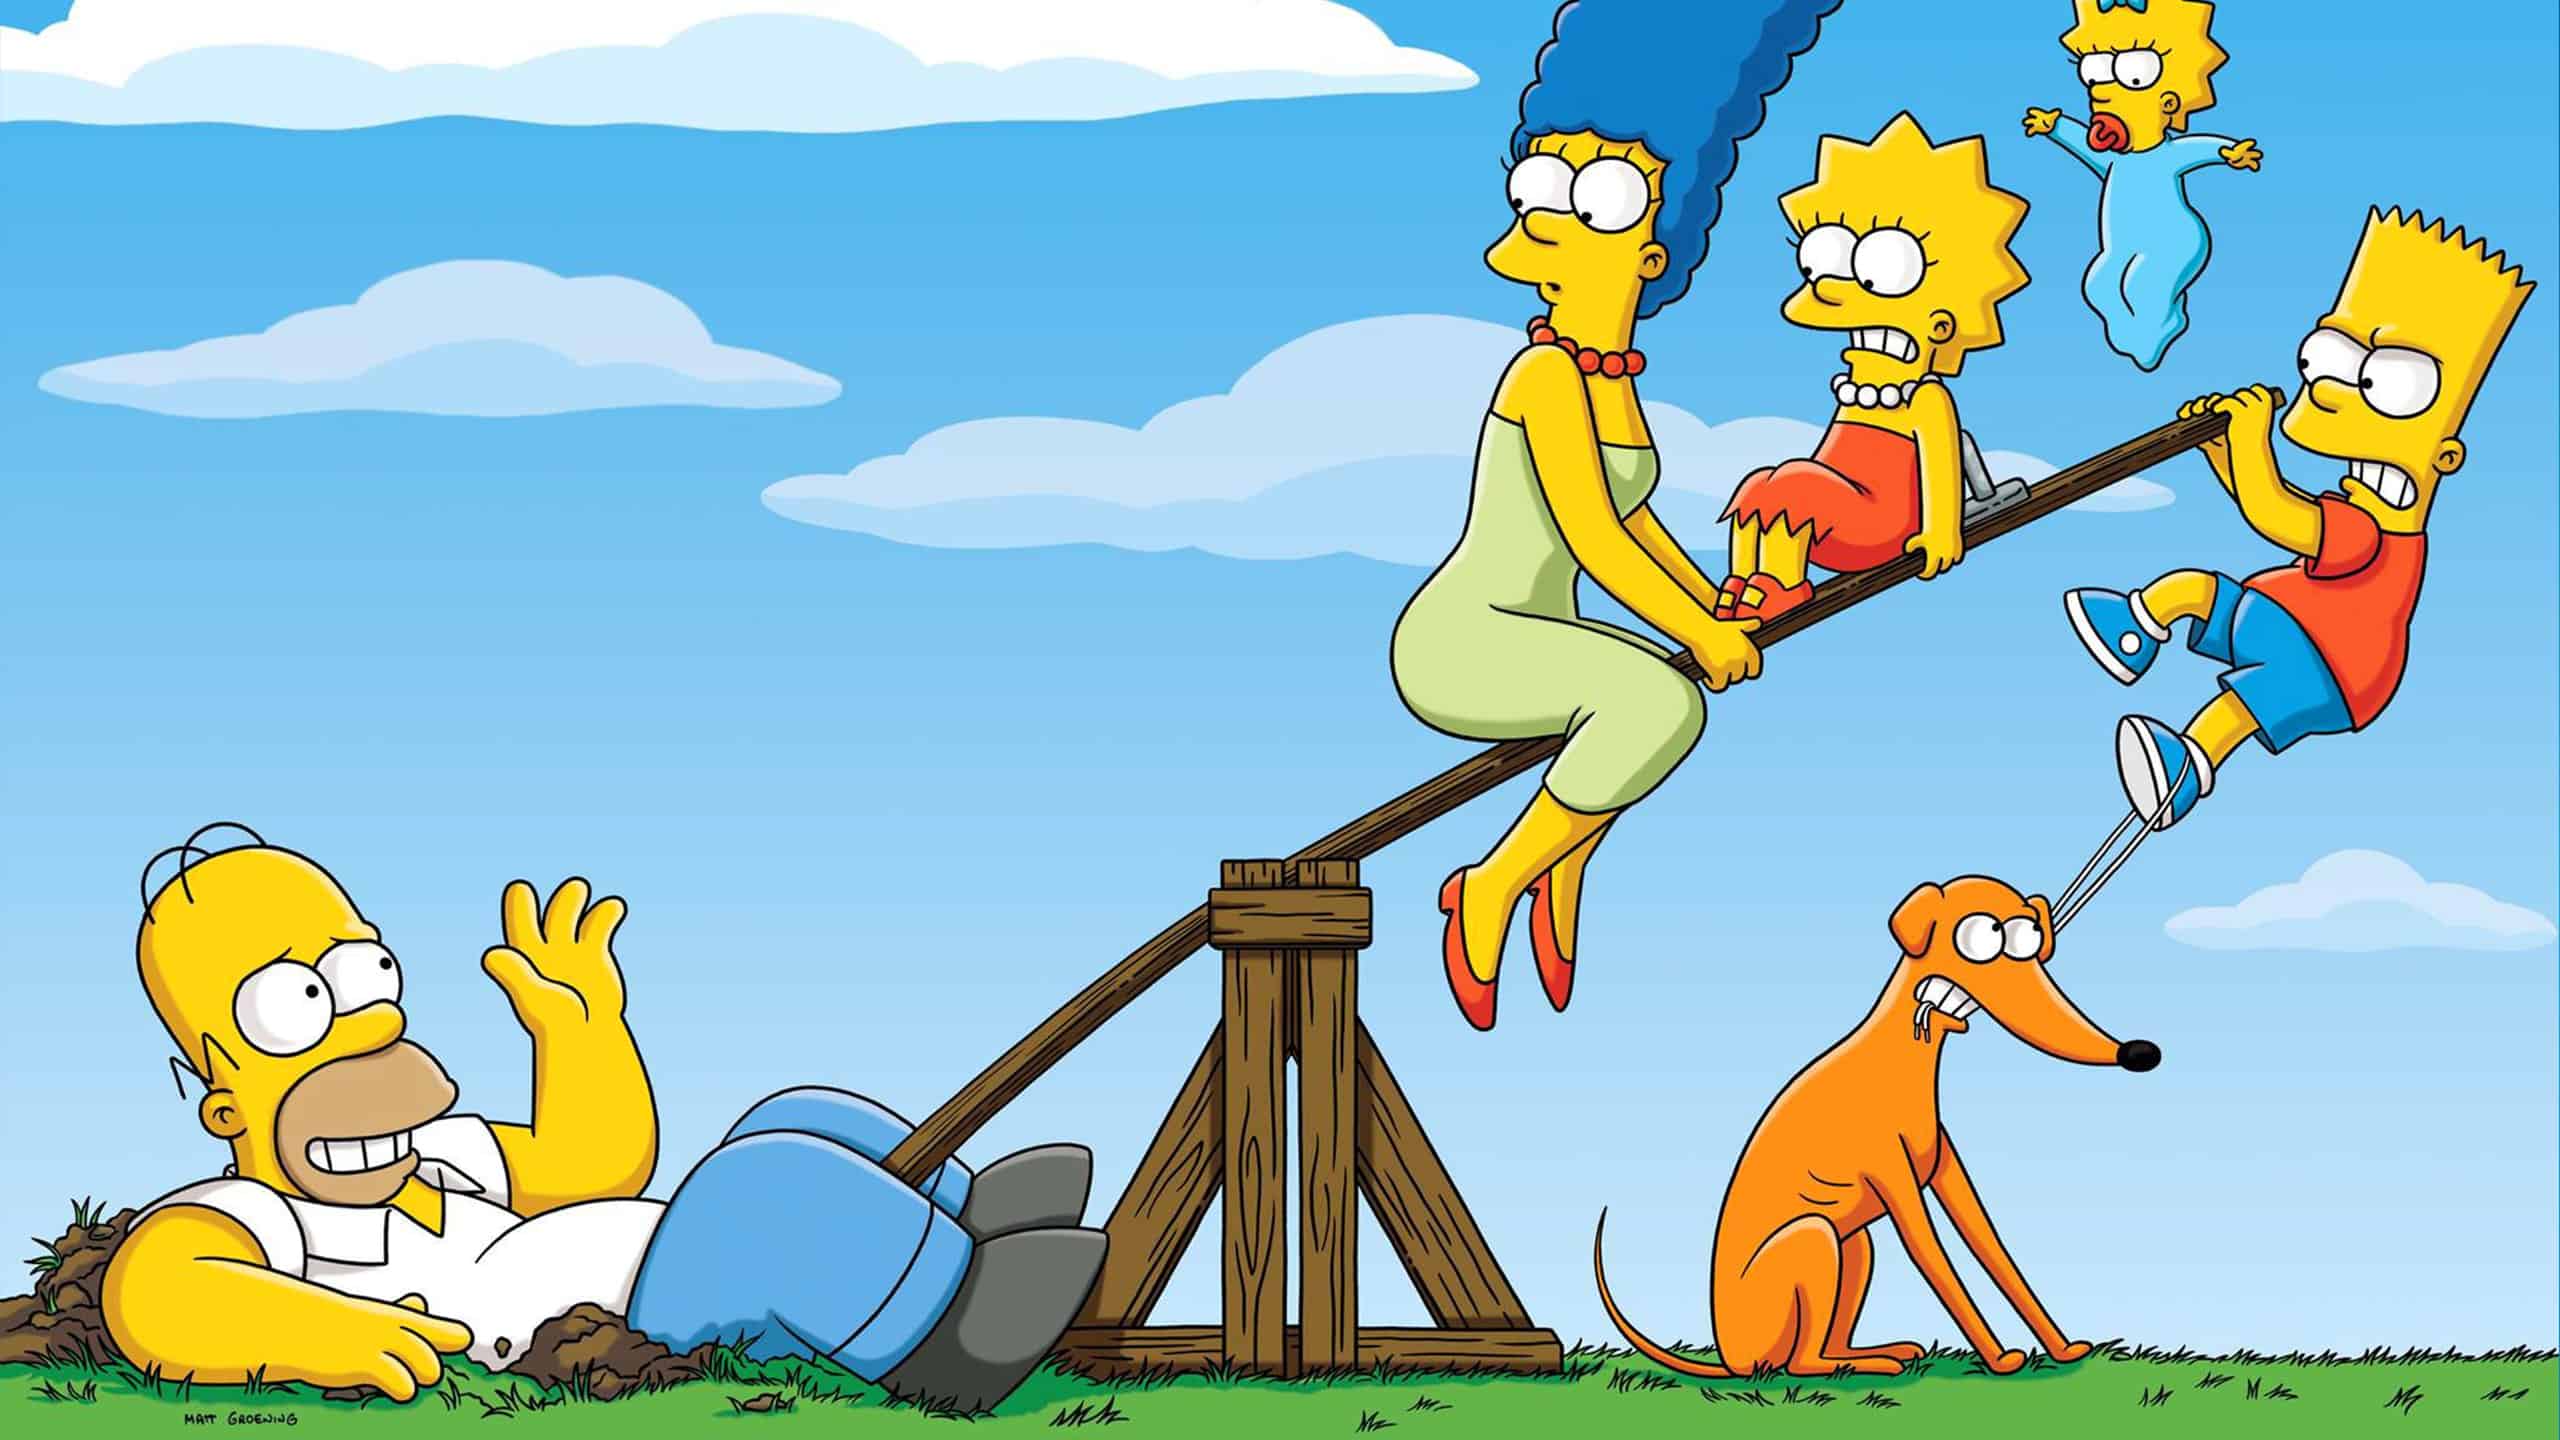 La famille Simpson joue sur une balançoire à bascule. Homer seul d’un côté s’enfonce dans le sol et toute la famille de l’autre côté tente de faire redescendre la balançoire.